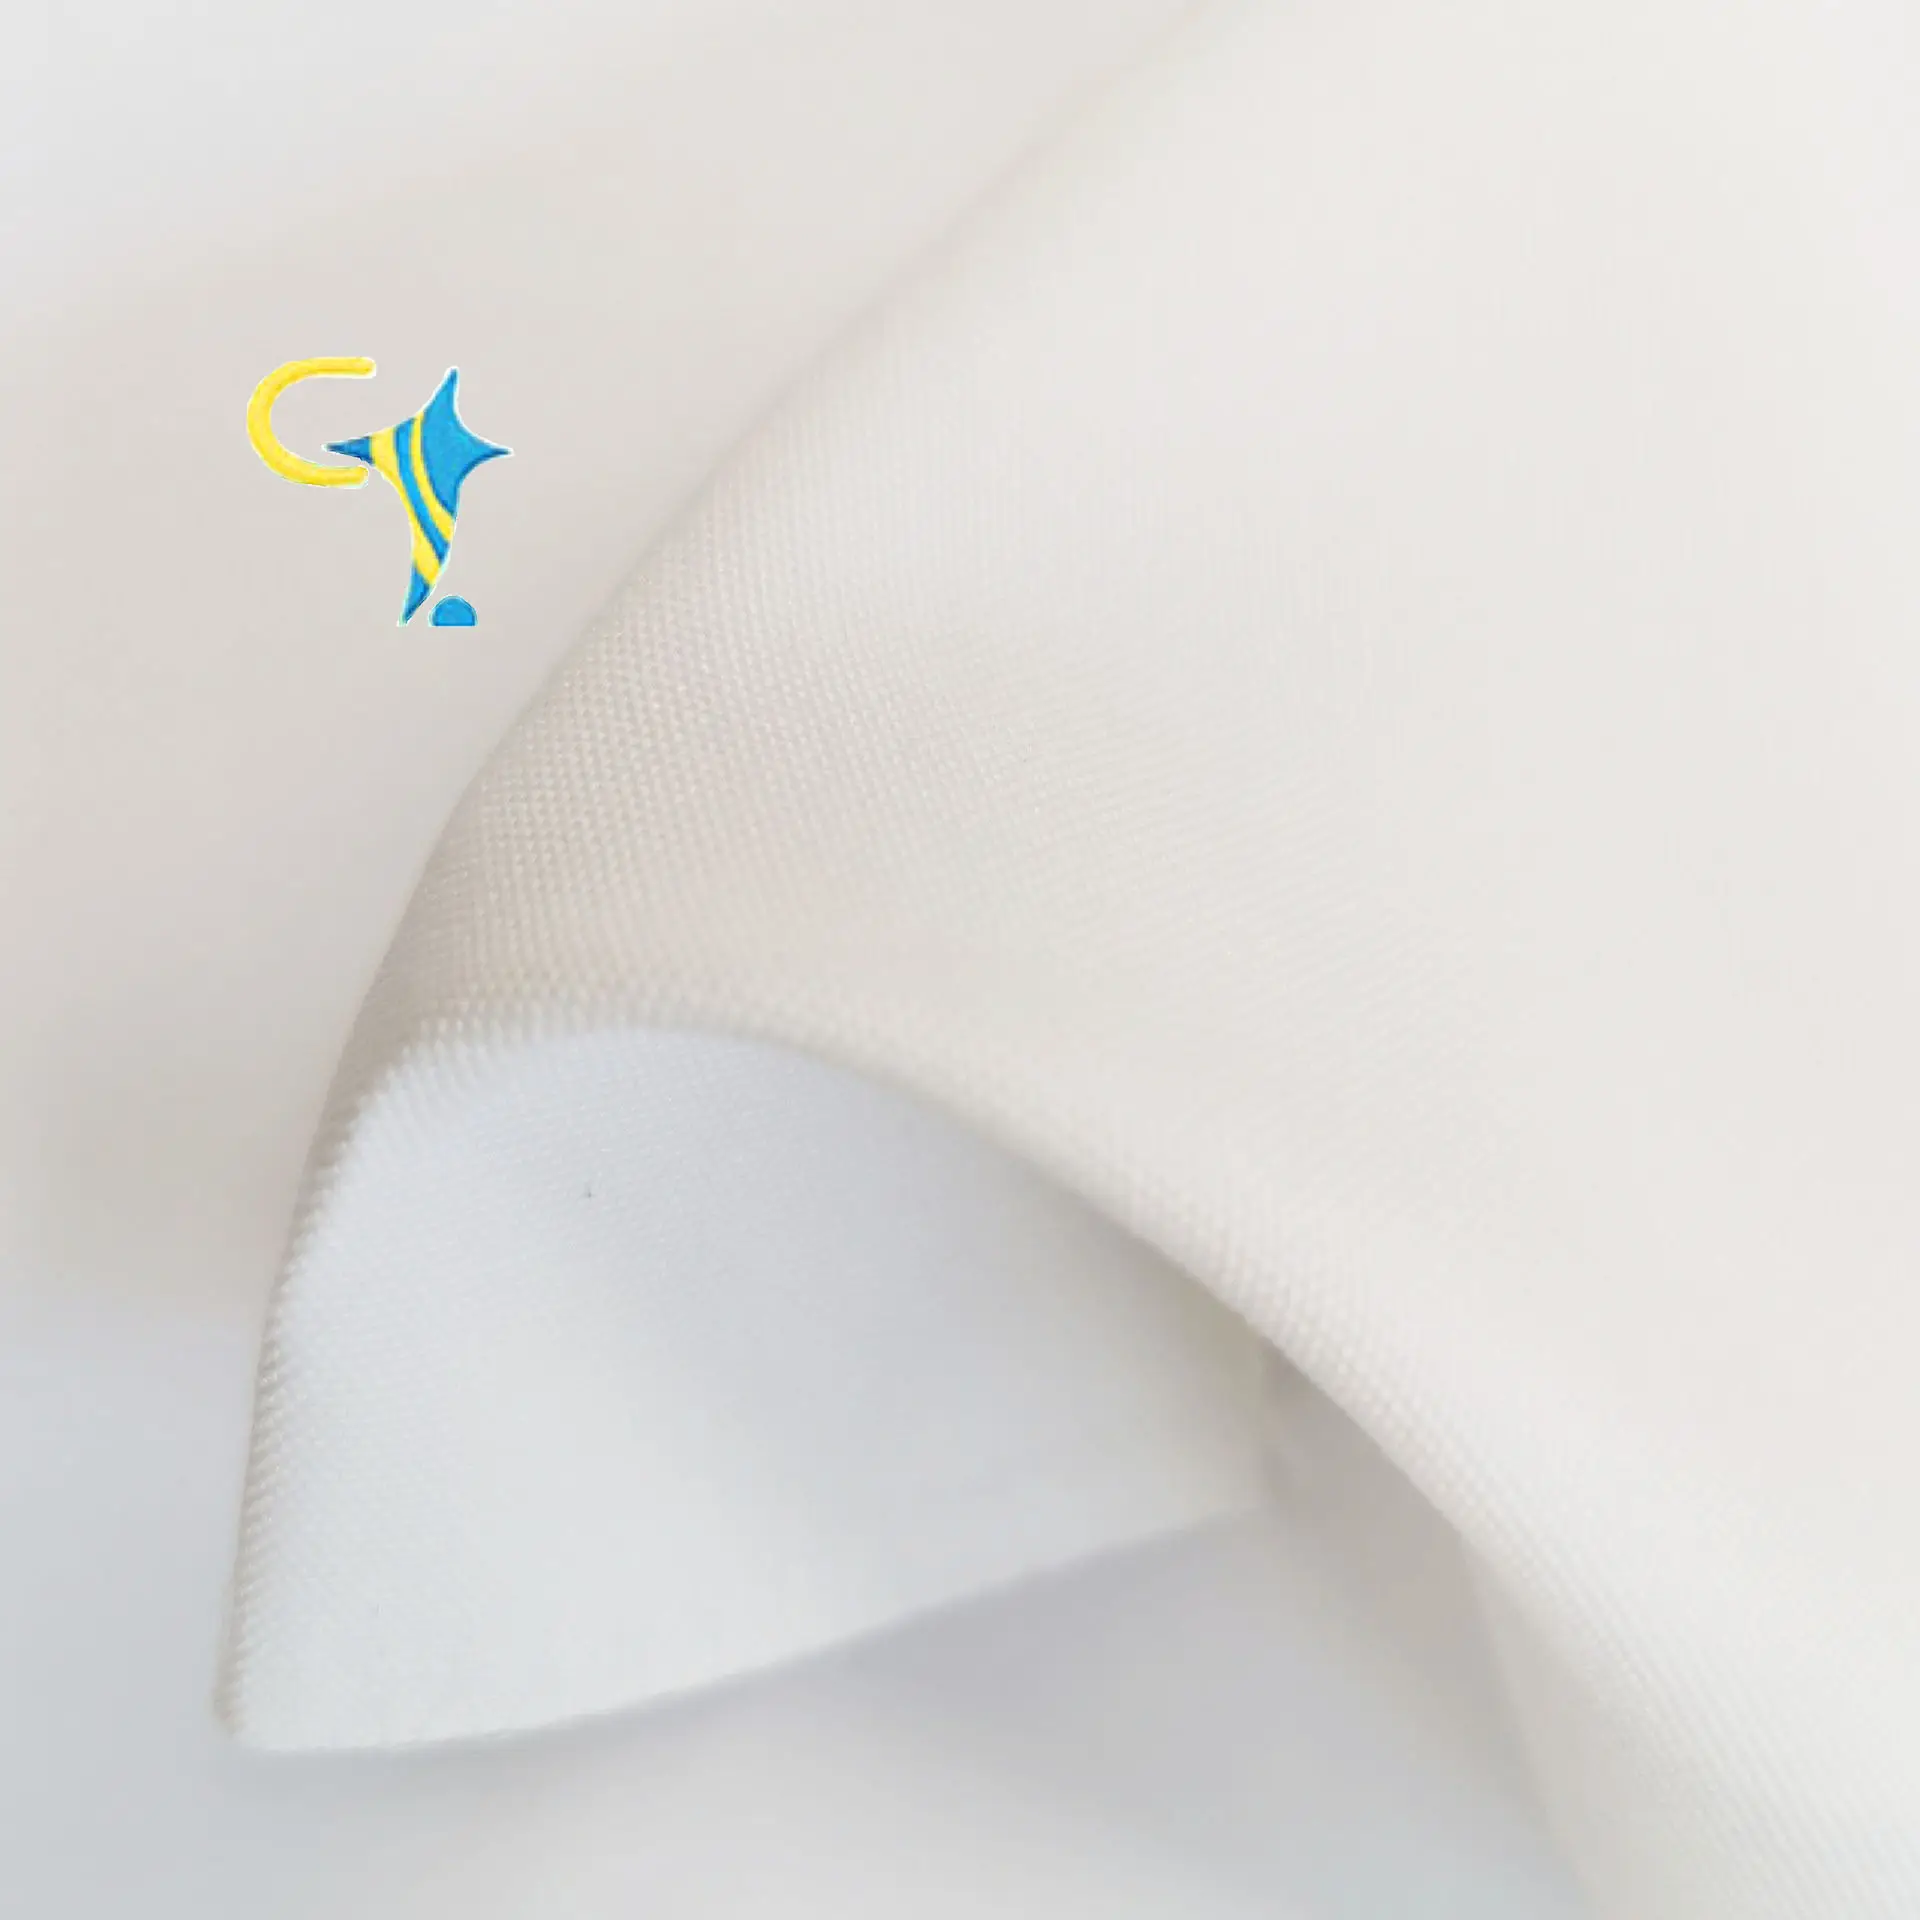 100% poliestere tessuto della tela di canapa 8oz sbiancato tessuto per il sacchetto tenda tenda scarpa ecc.